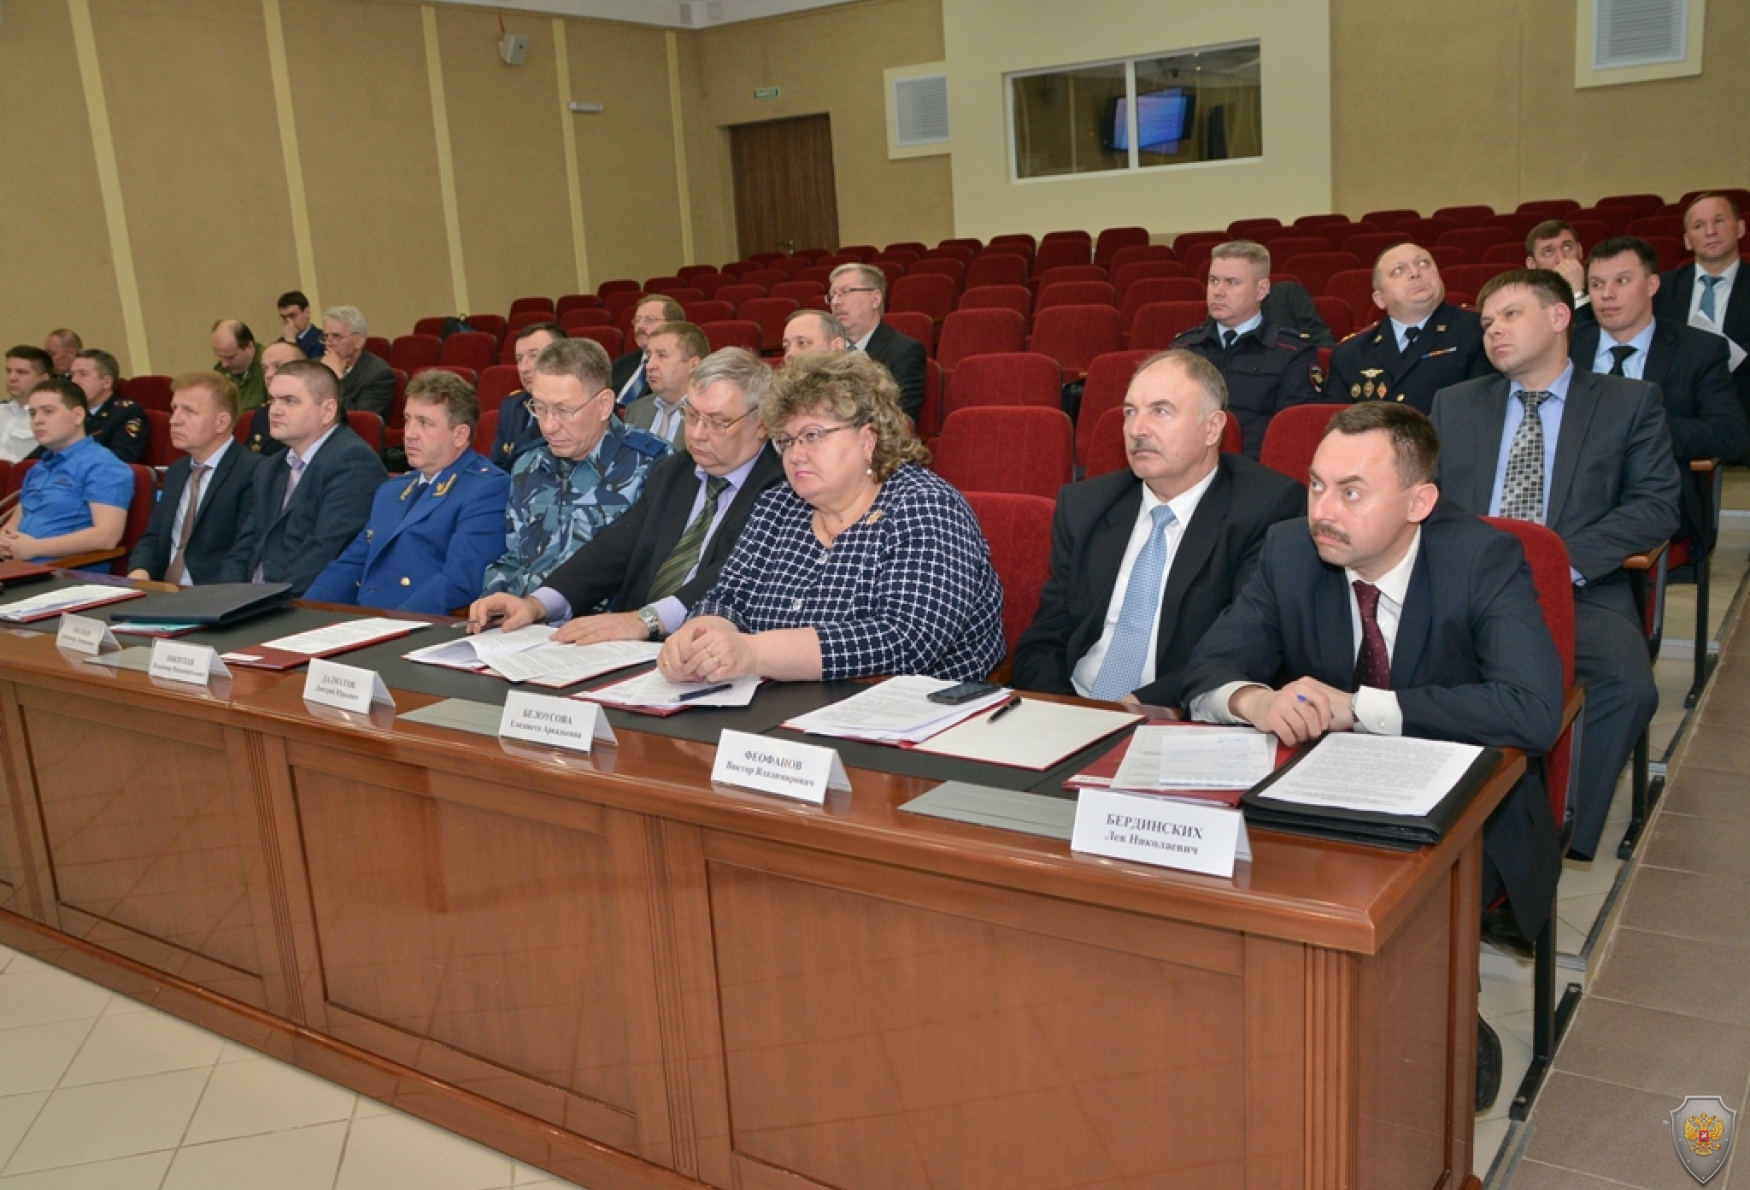 Выездное совместное заседание Антитеррористической комиссии и оперативного штаба в Кировской области 19 апреля 2016 года